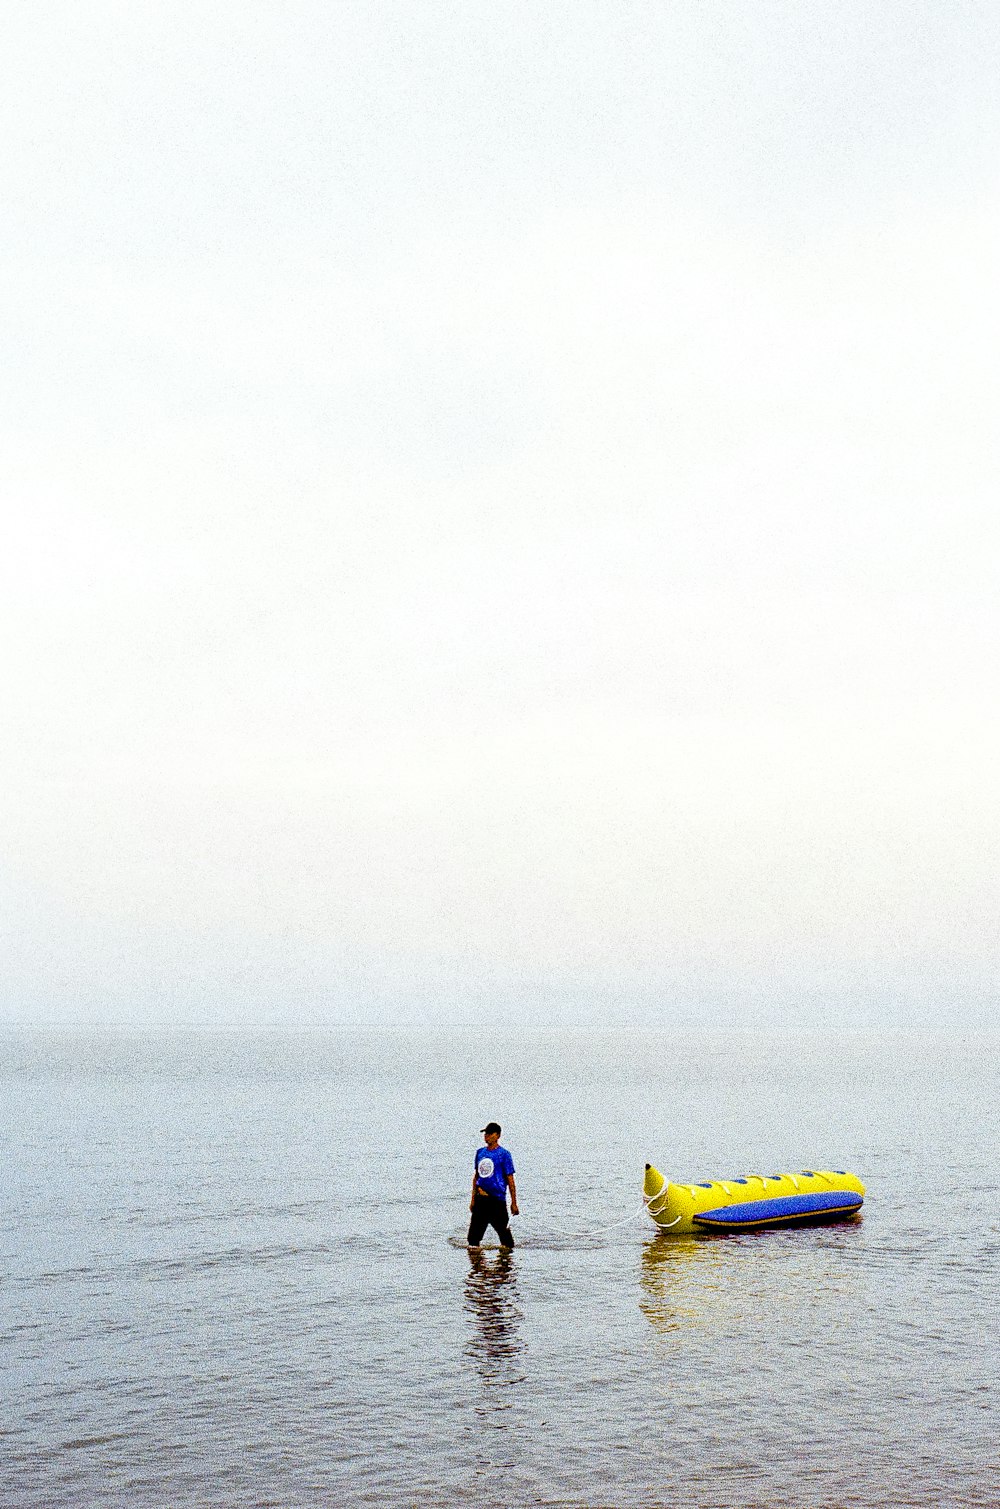 풍선 보트 옆 물 속에 서 있는 남자